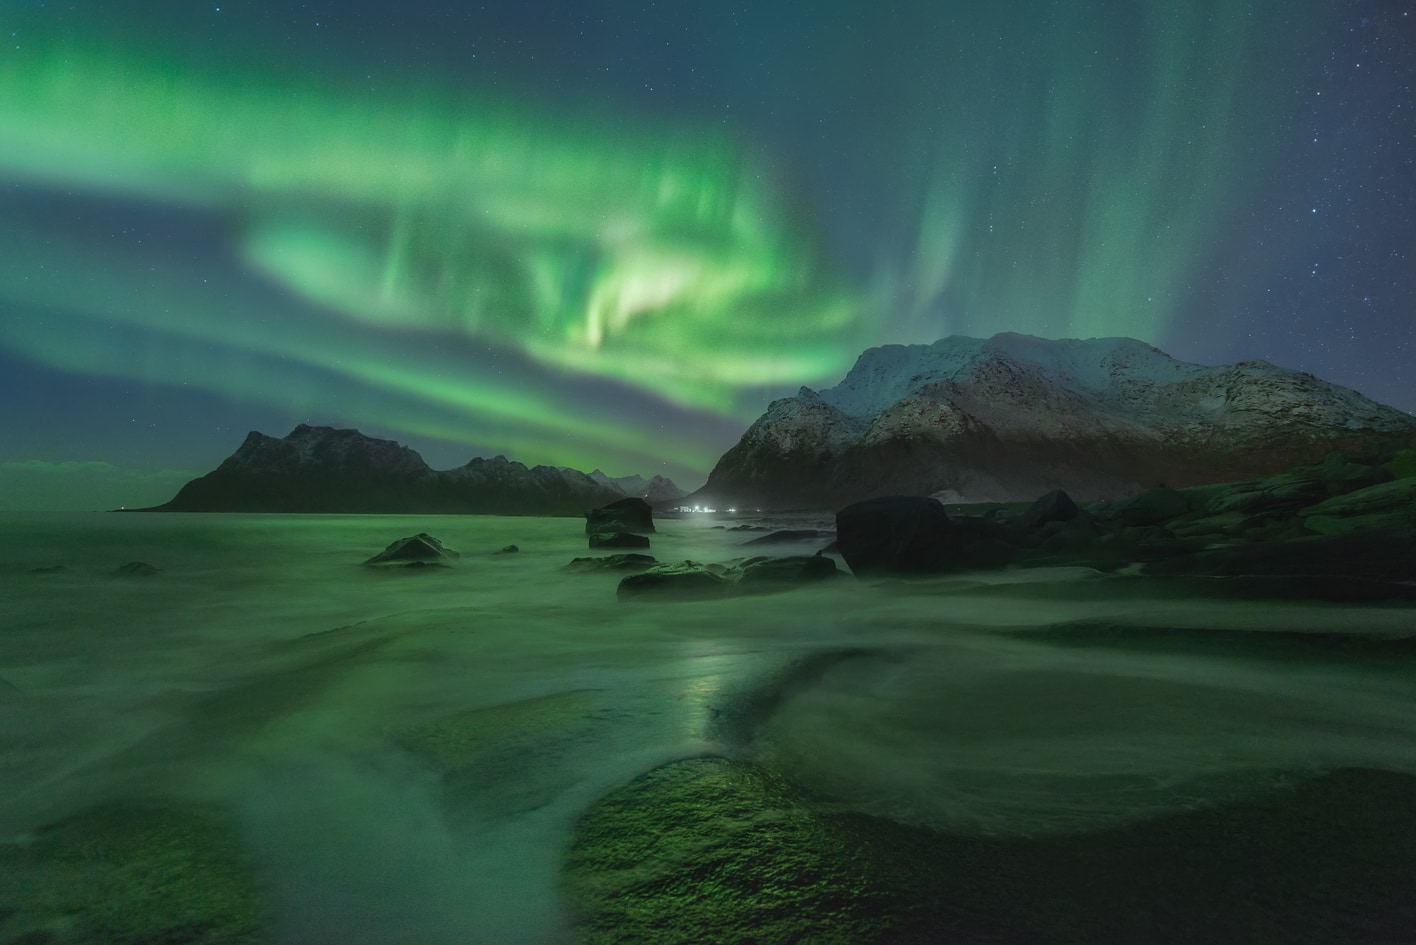 mejor viaje fotografico a lofoten noruega para ver aurora boreal